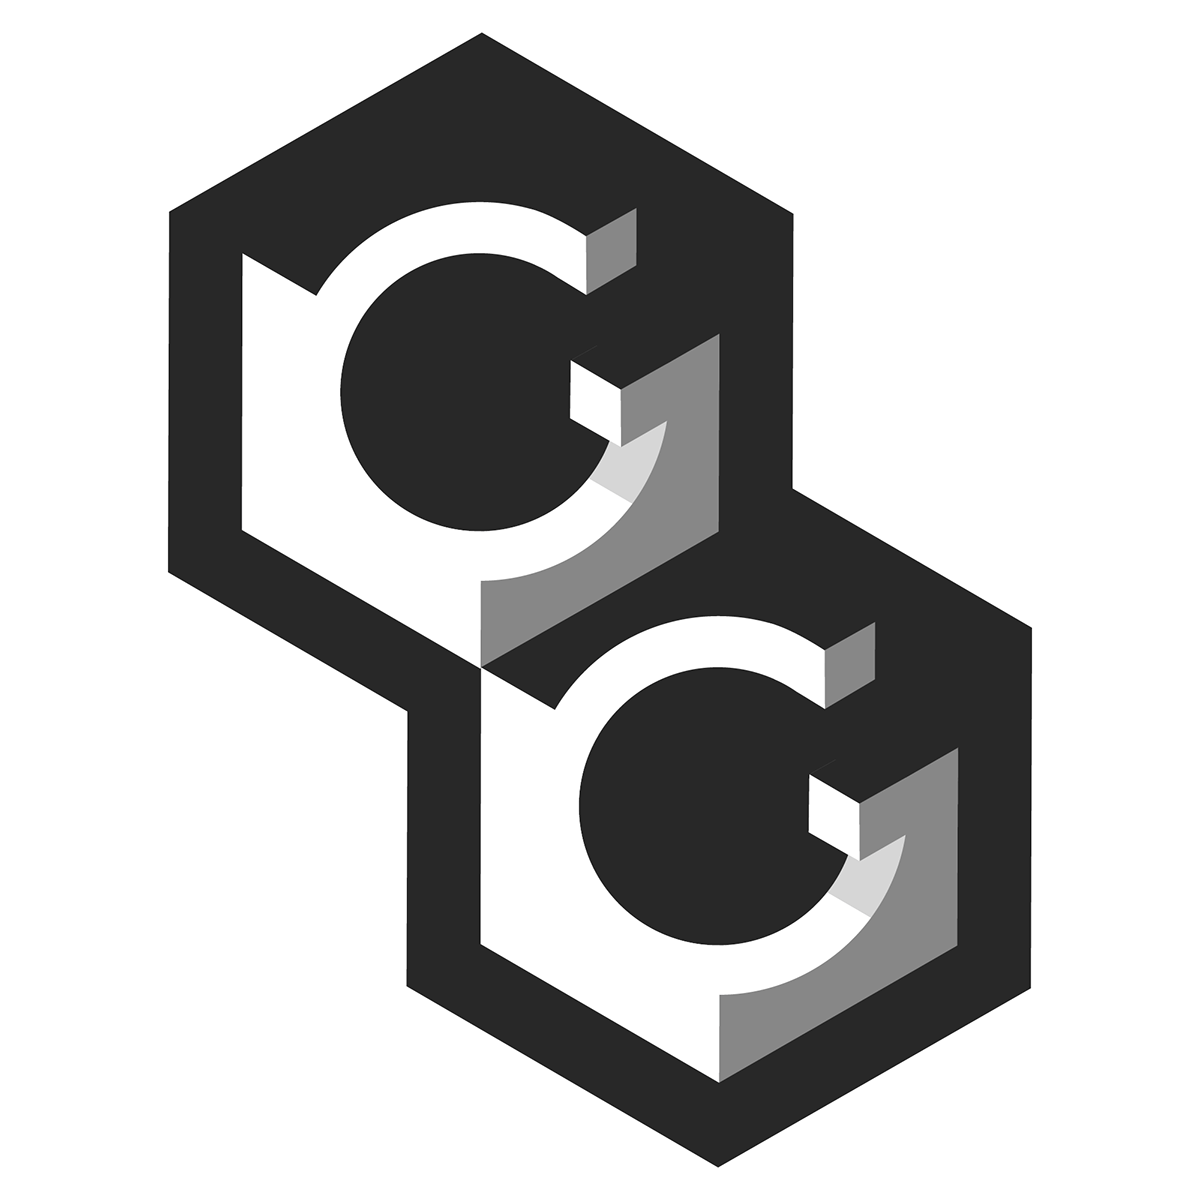 GG Logo - GG (Logo Design) on Behance